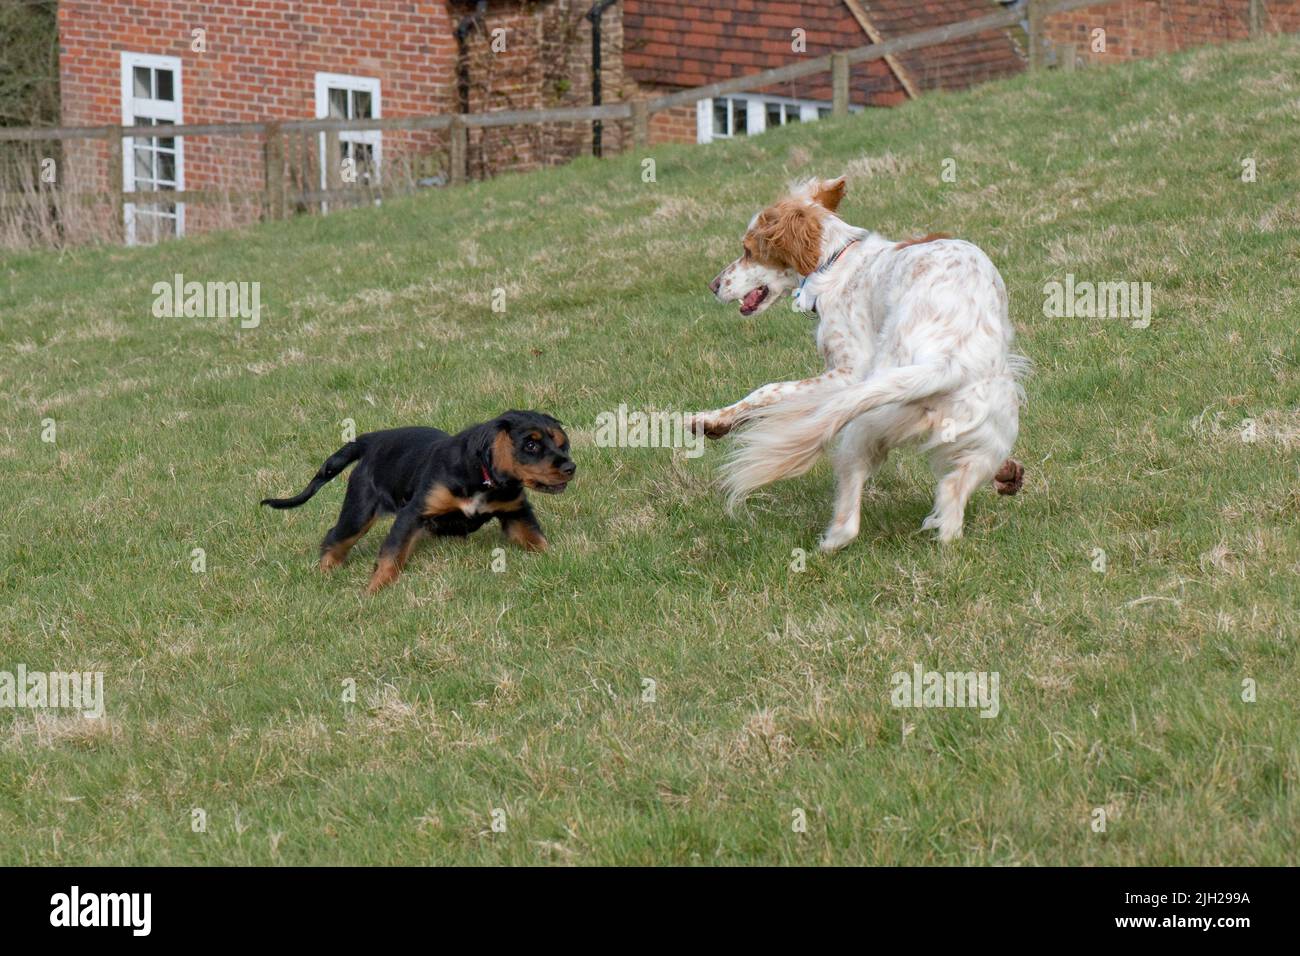 Un perro setter inglés jugando con un cachorro de trabajo spaniel y divertirse a pesar de su tamaño y diferencia de edad, Berkshire, abril Foto de stock